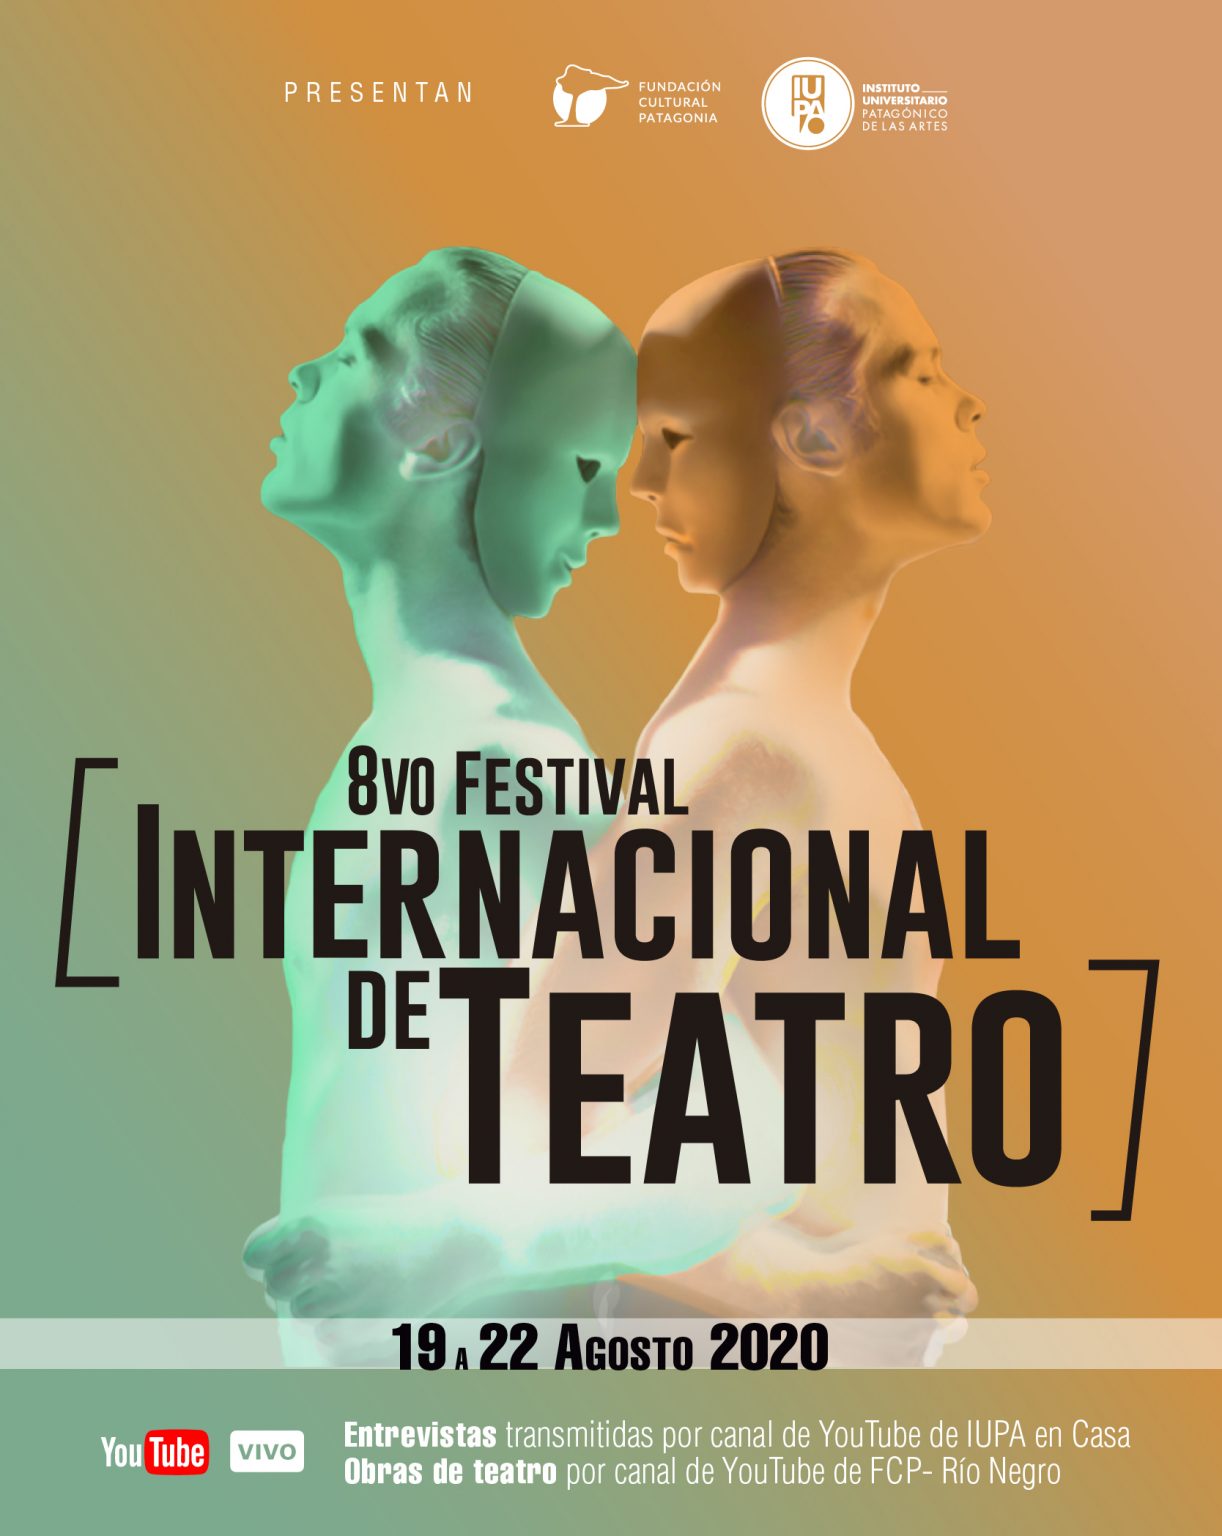 Estrenamos una nueva edición del Festival de Teatro Instituto